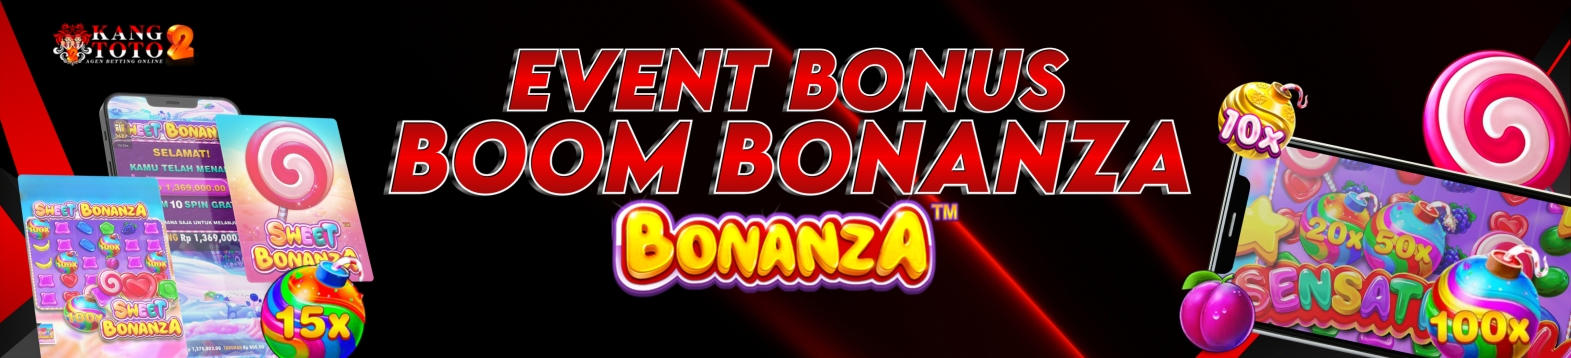 Boom Bonanza KANGTOTO2